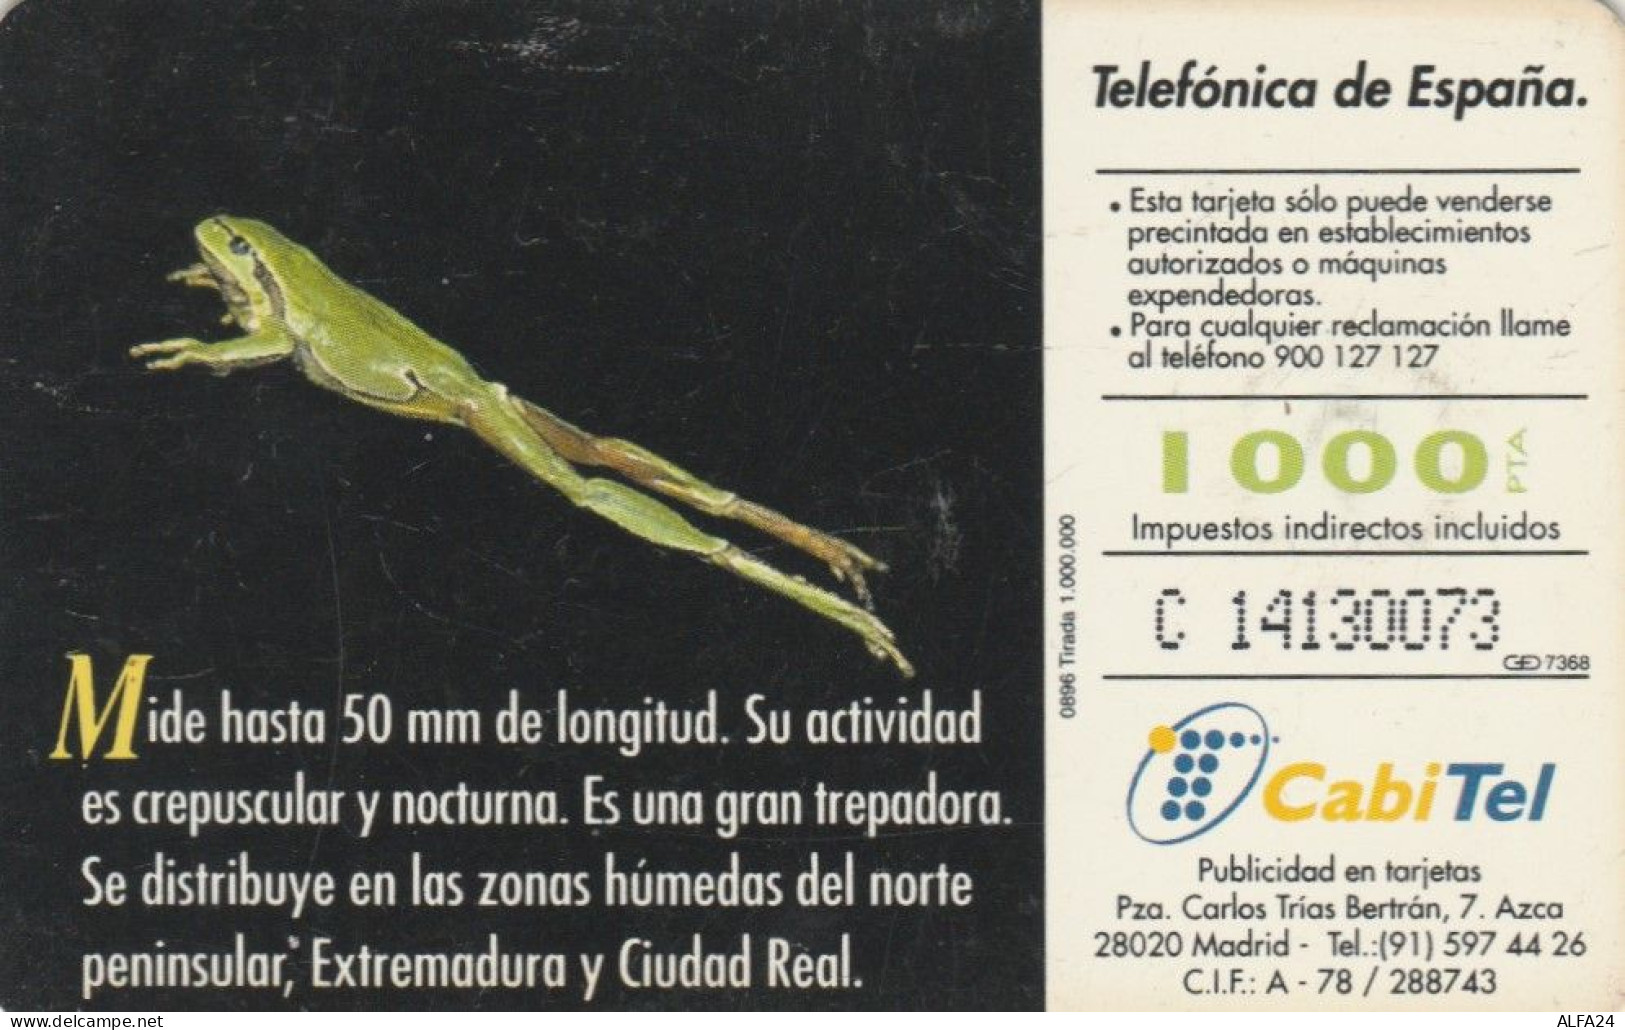 PHONE CARD SPAGNA FAUNA IBERICA (CK7198 - Basisausgaben